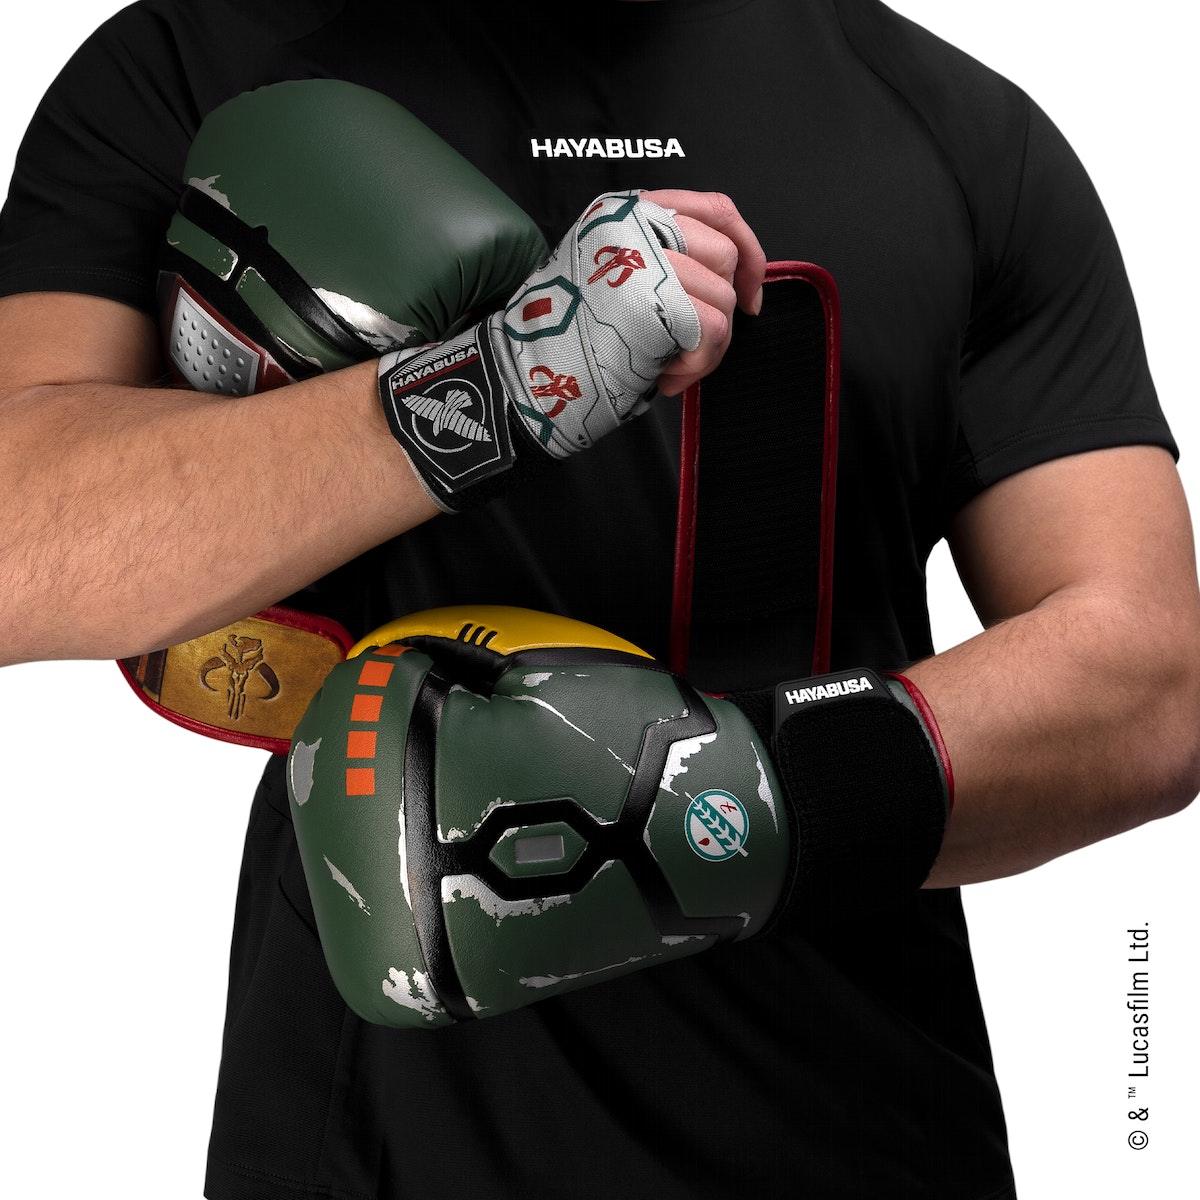 Star Wars Boba Fett Boxing Gloves - Violent Art Shop